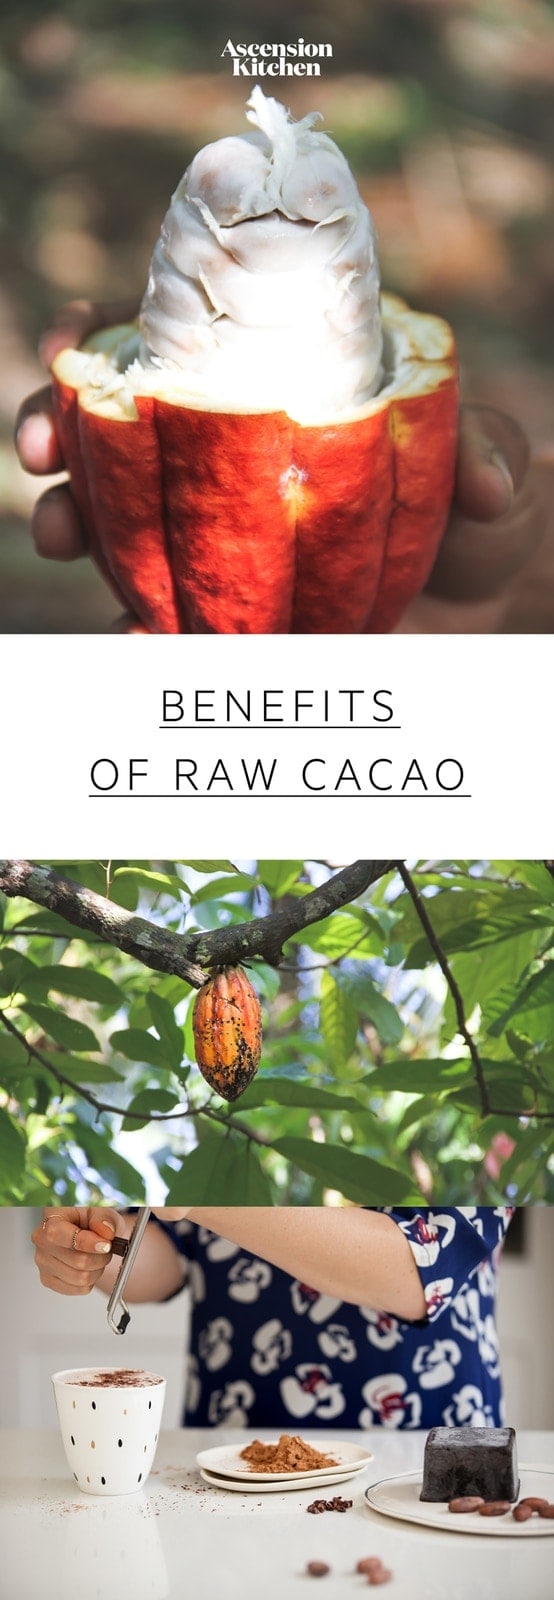 Nutrizione Benefici per la salute del cacao: scopri come il cacao crudo differisce dal cacao perché il cacao è così benefico. #benefitscacao # cacaobenefits # cacaonutrition # cacaopowderbenefits #rawcacaopowder # cacaopowderrecipes #superfoods # AscensionKitchen